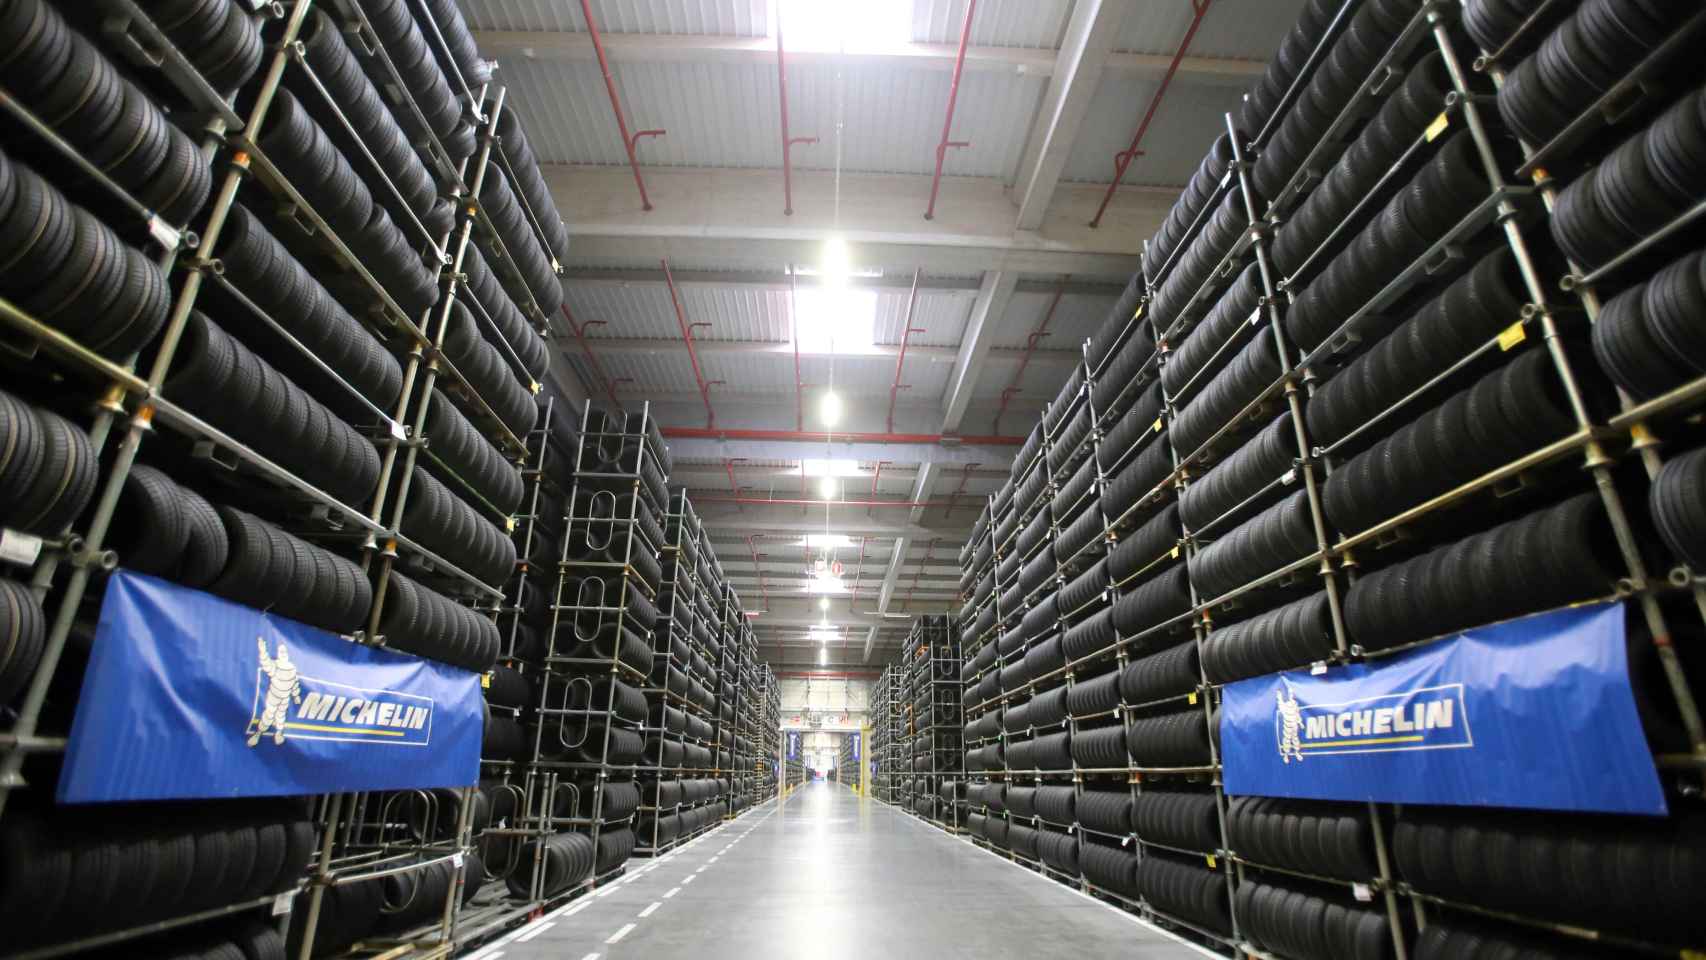 Neumáticos almacenados en las instalaciones de Michelin en Valladolid